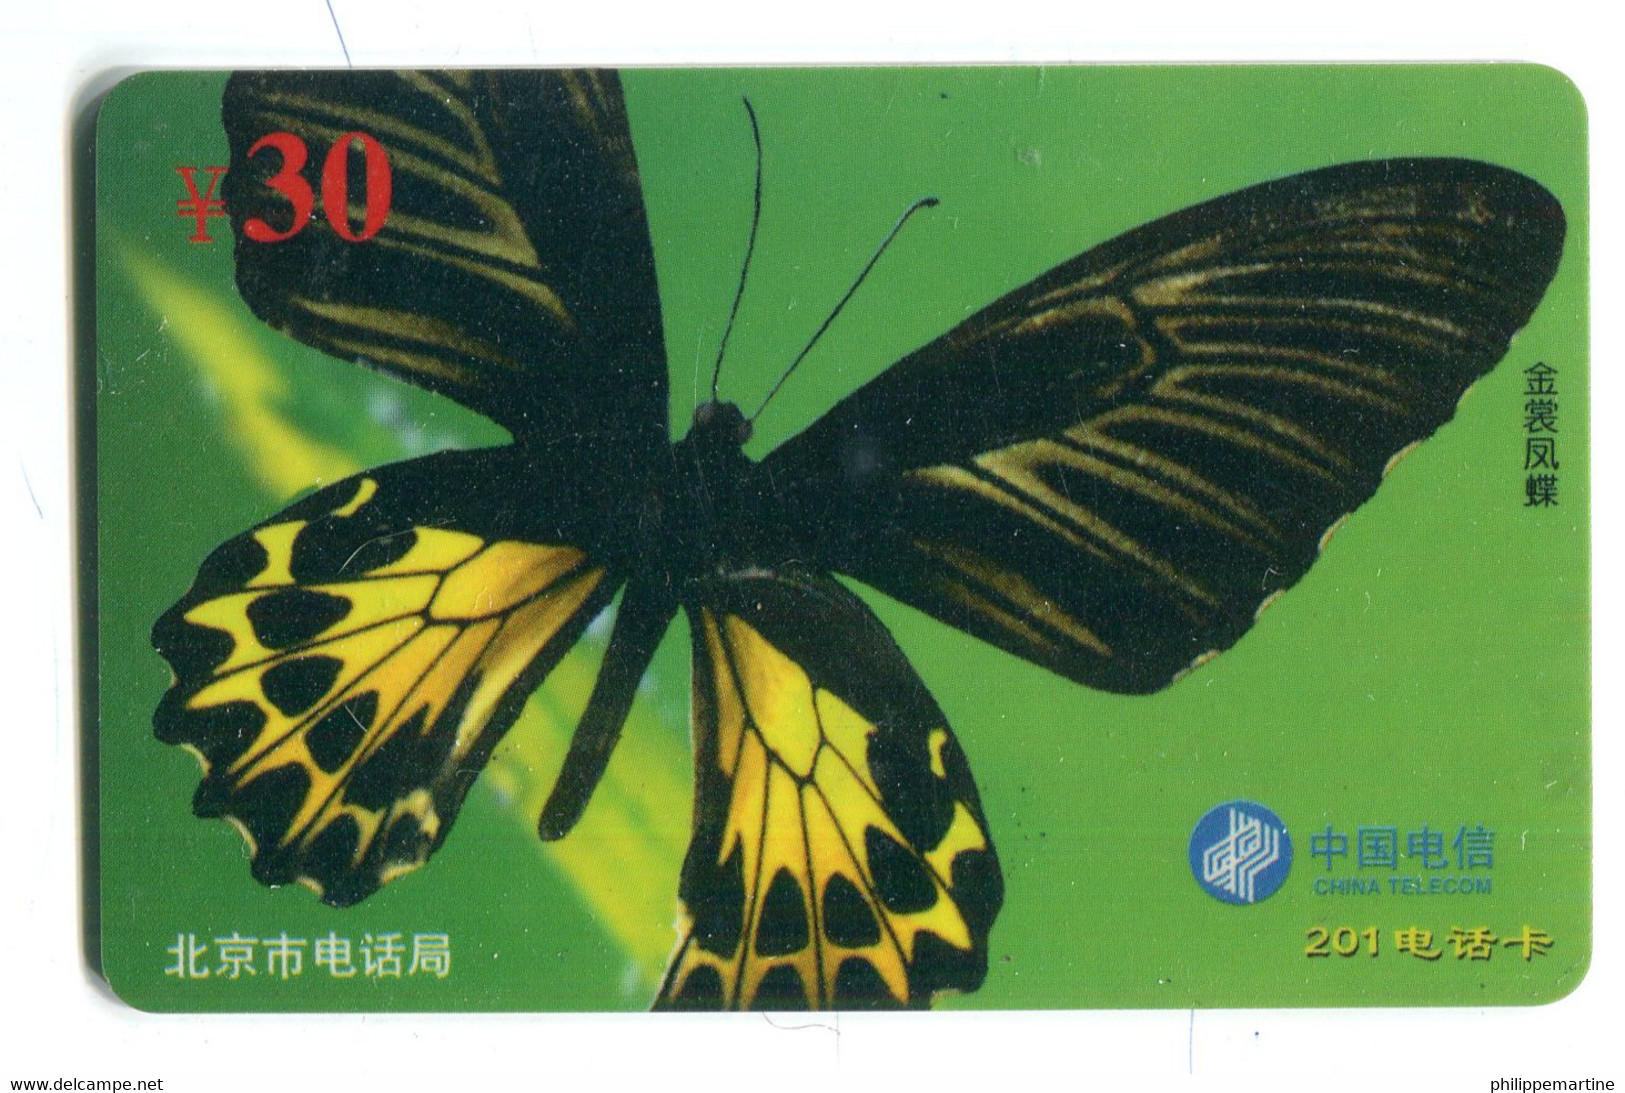 Télécarte China Telecom : Papillon - Papillons